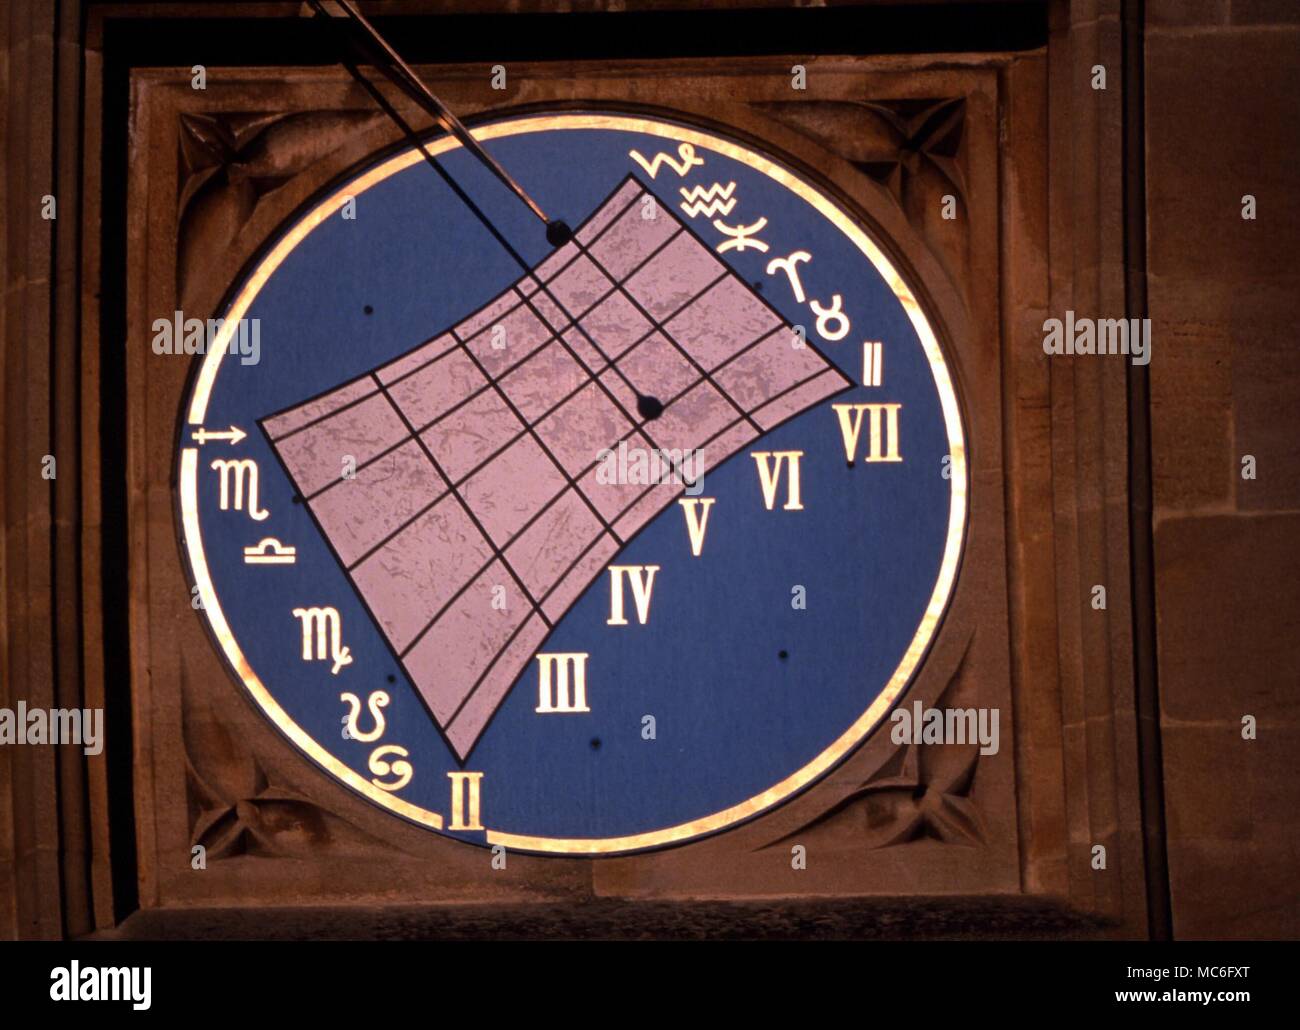 Les cachets des douze signes du zodiaque, sur themodern cadran solaire dans le quadrilatère de Merton College, Oxford. Banque D'Images